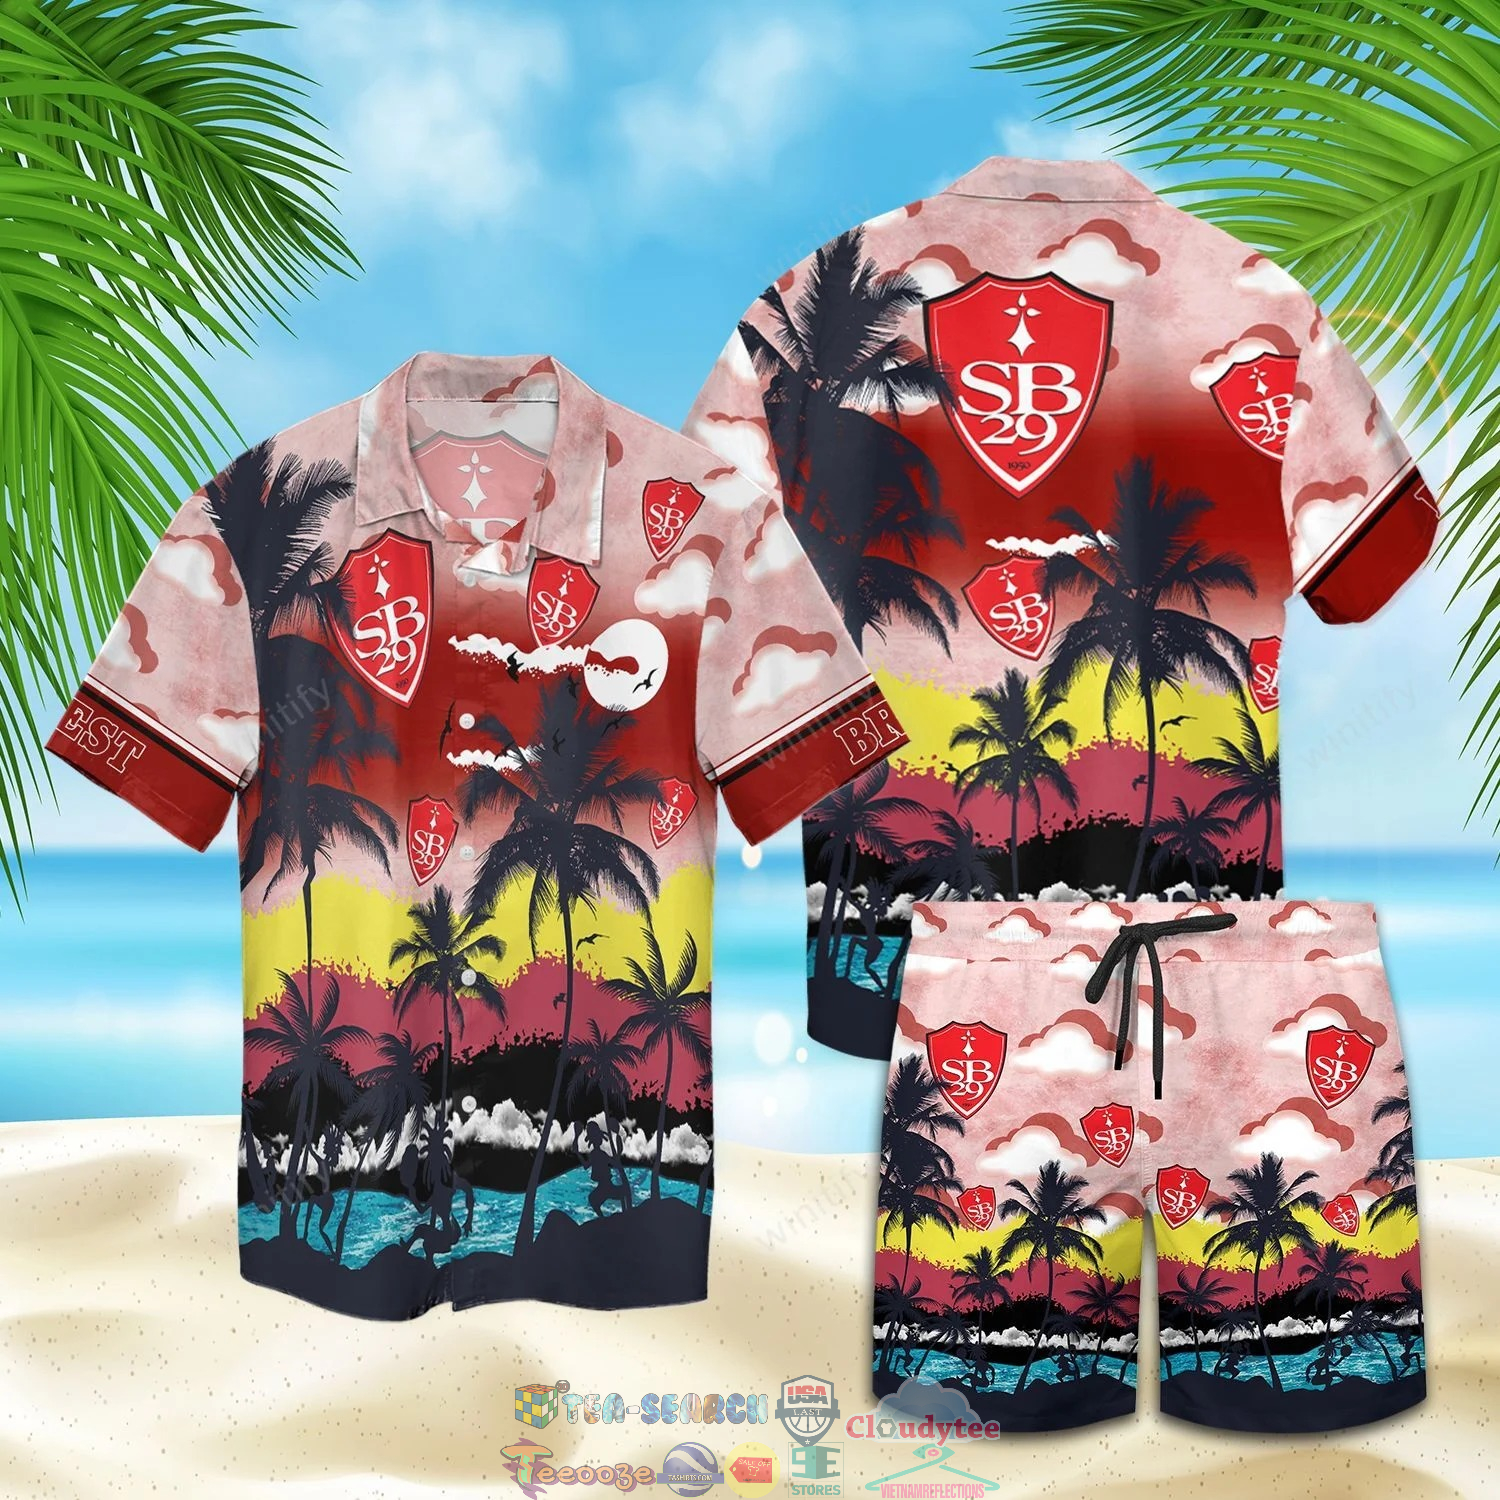 Stade Brestois 29 FC Palm Tree Hawaiian Shirt Beach Shorts